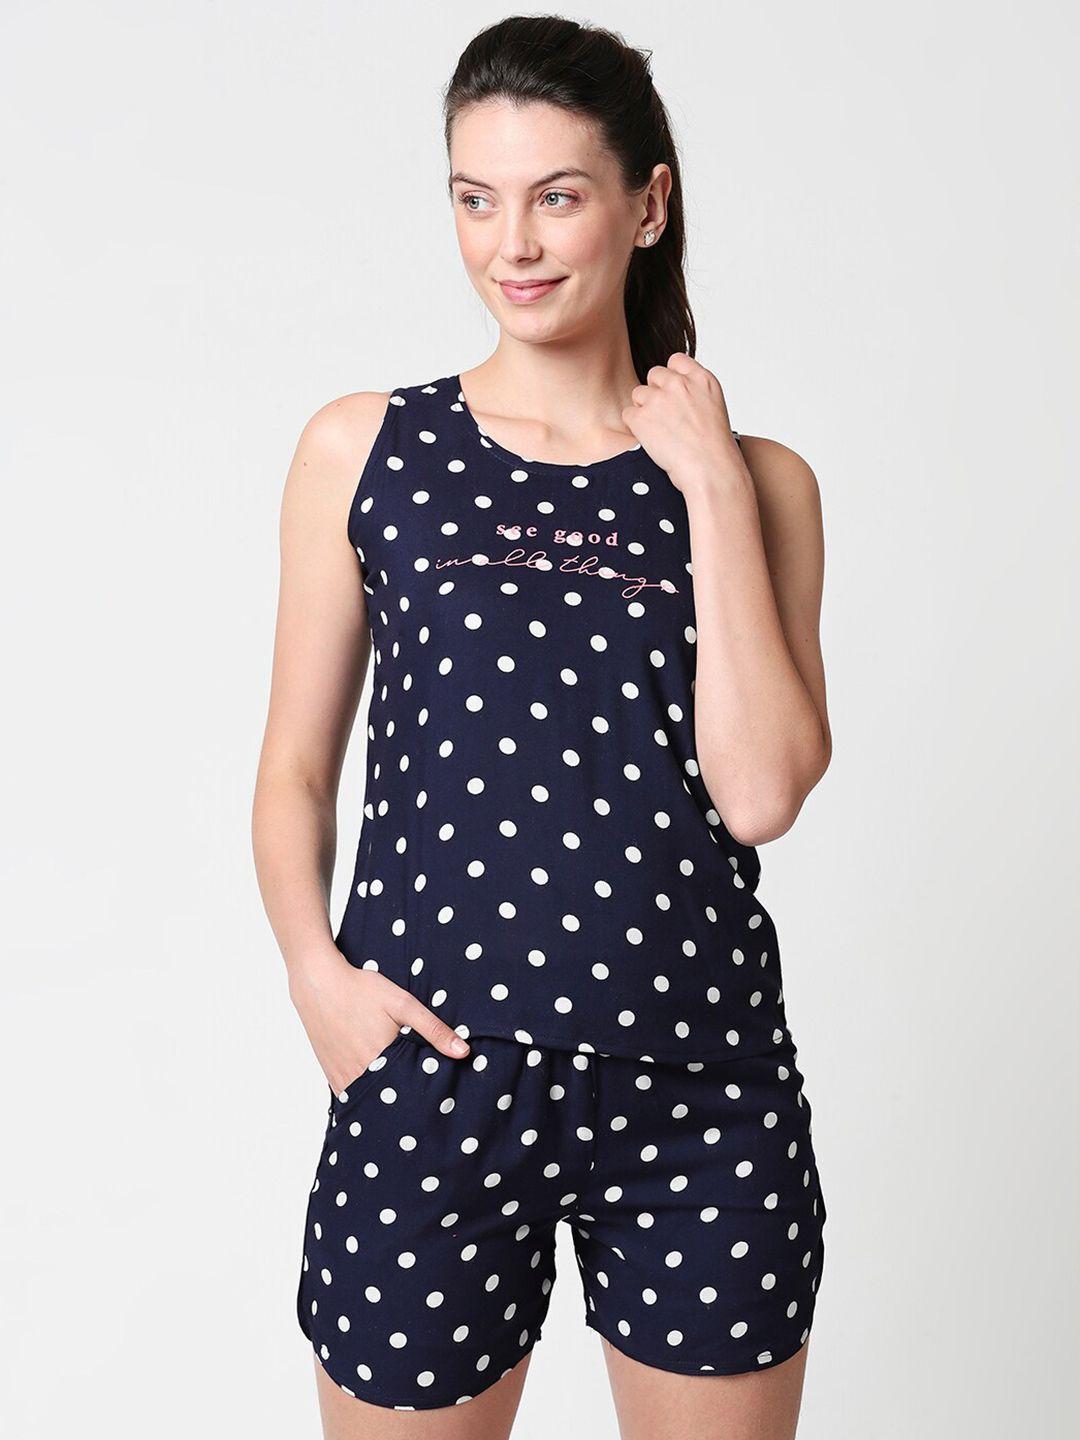 zeyo women navy blue & white polka dots printed night suit